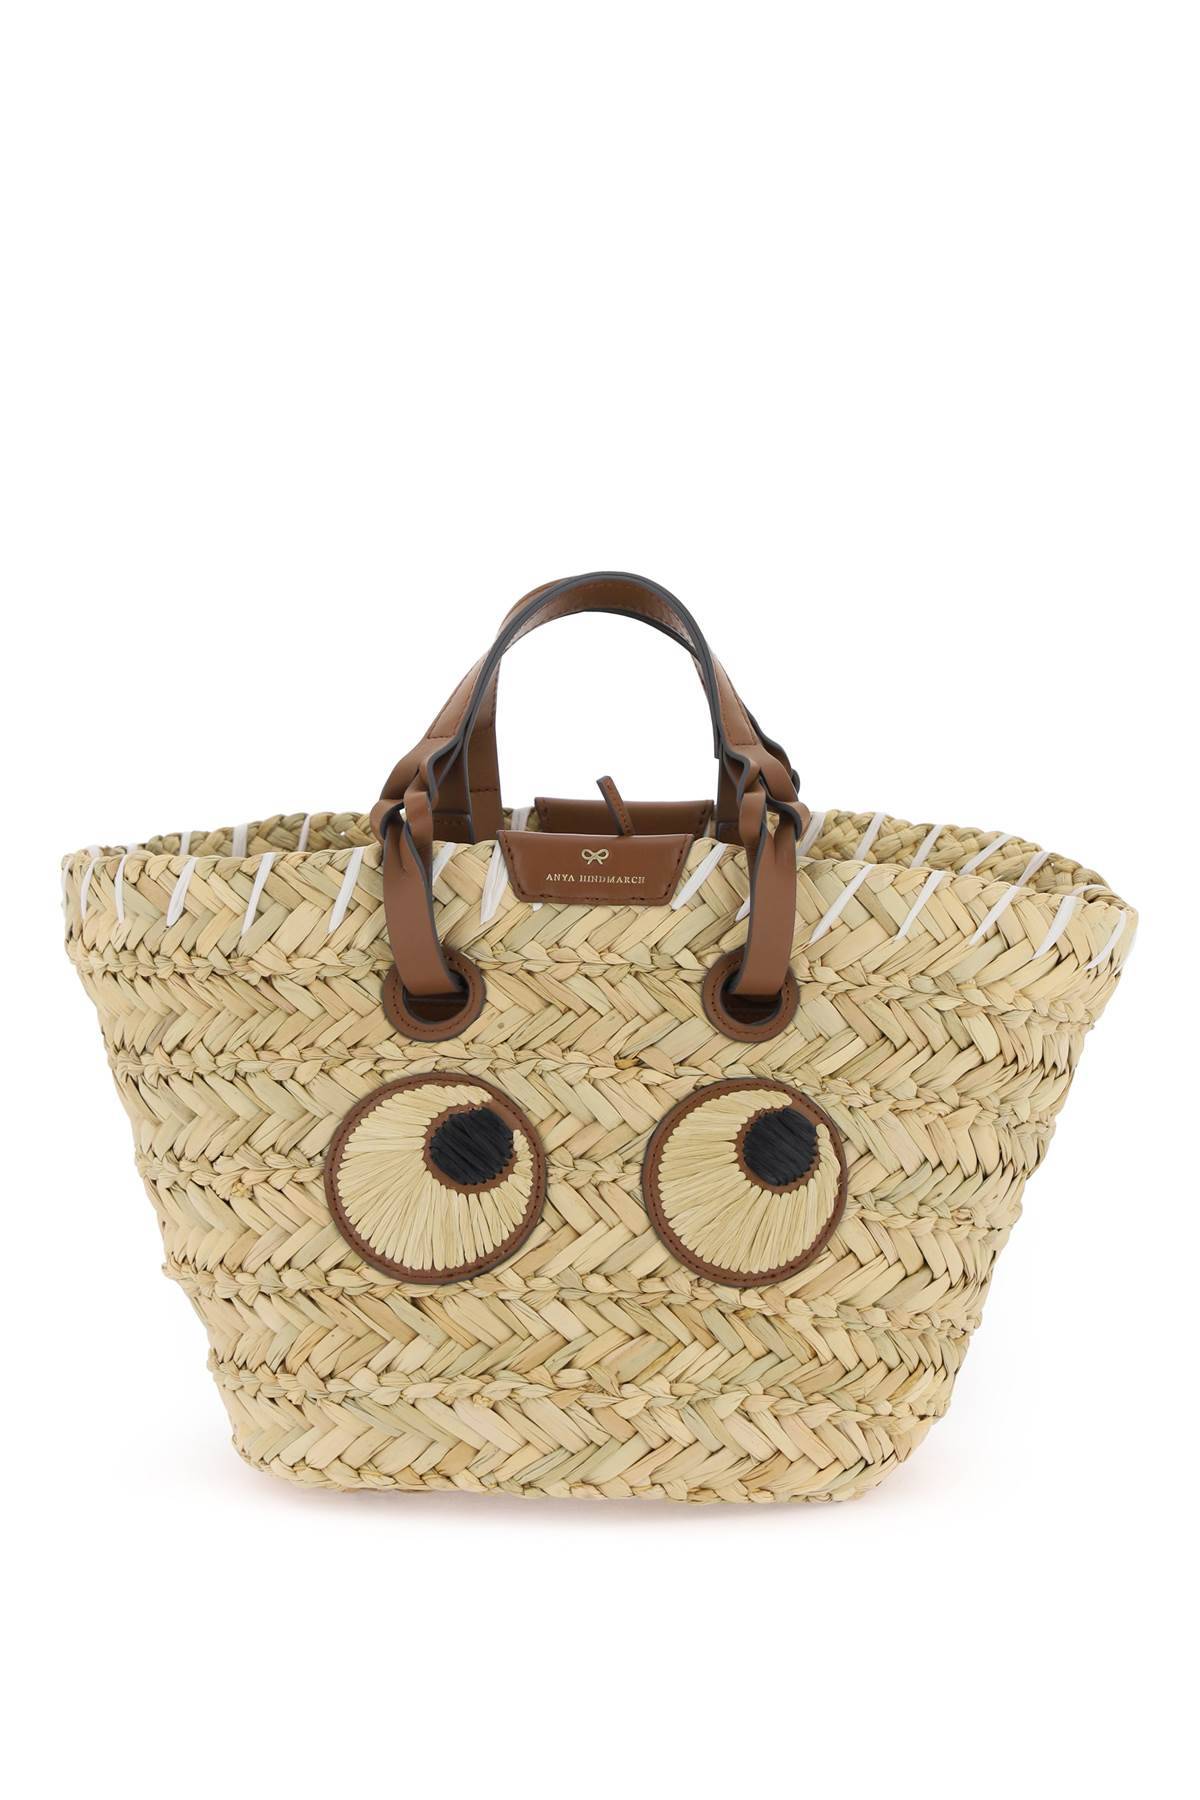 Anya Hindmarch ANYA HINDMARCH paper eyes basket handbag